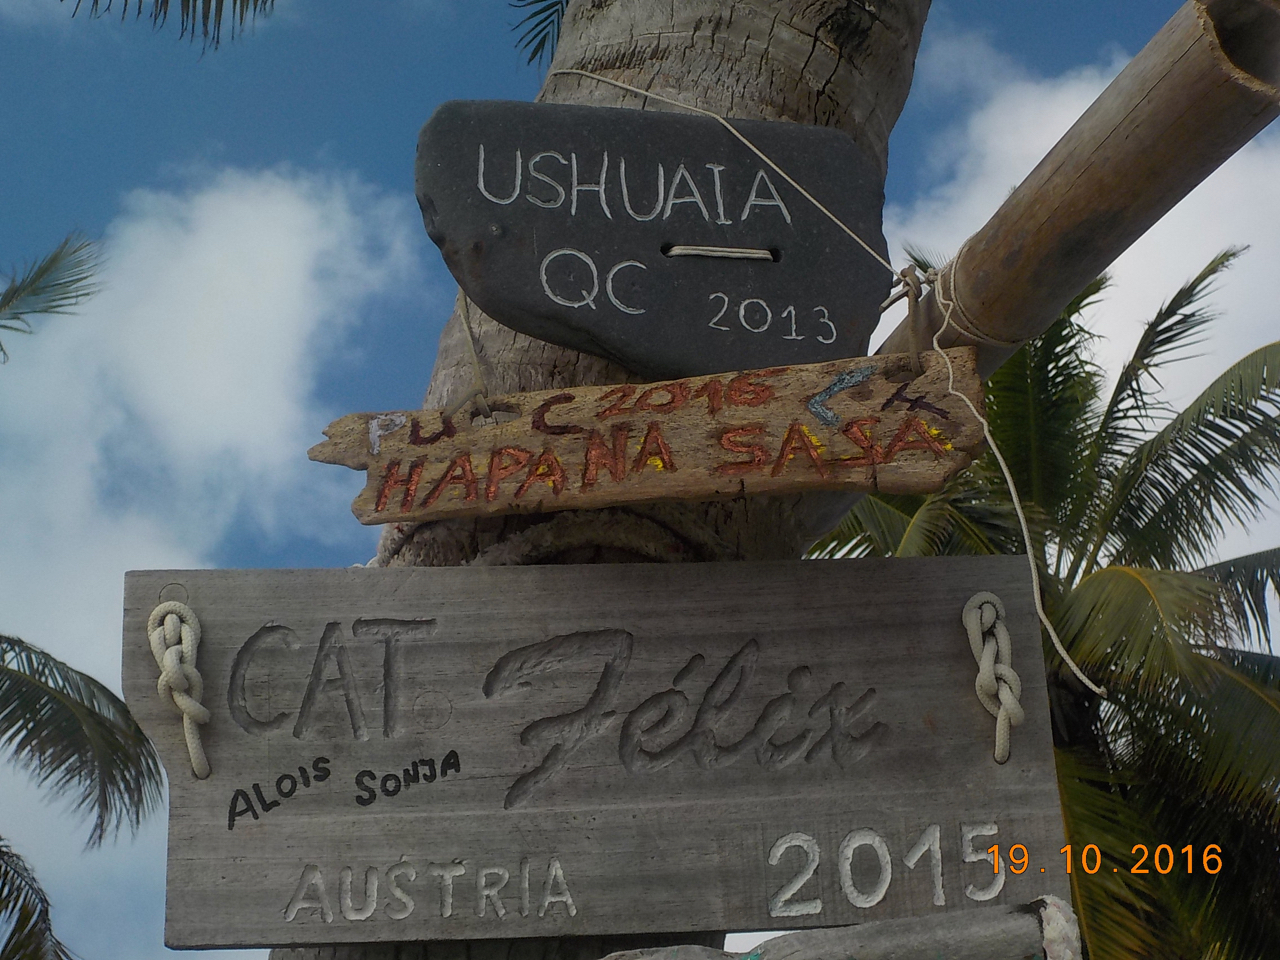 Das Bootsschild der hapa na sasa auf Cocos Keeling